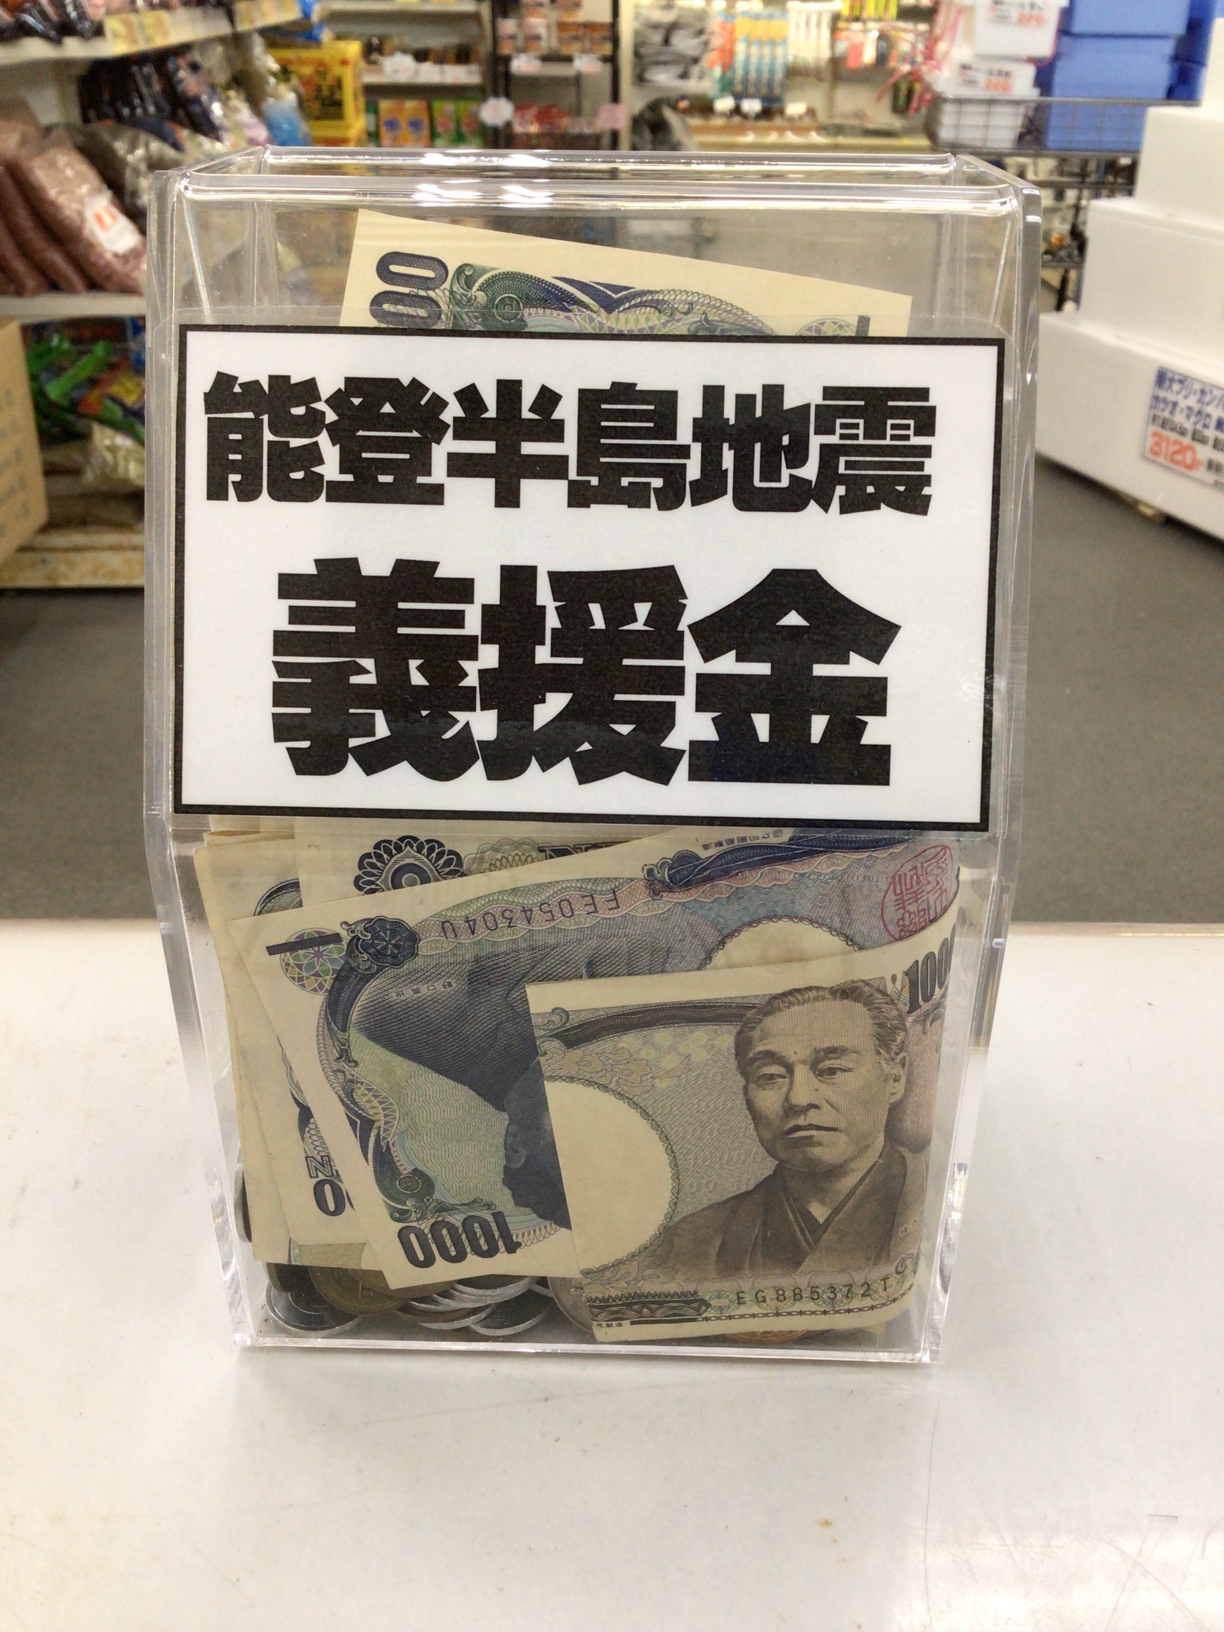 能登半島義援金箱は、今までにな速さで溜まっていきます。今も1000円札を寄付していただきました。ありがとうございます。釣太郎